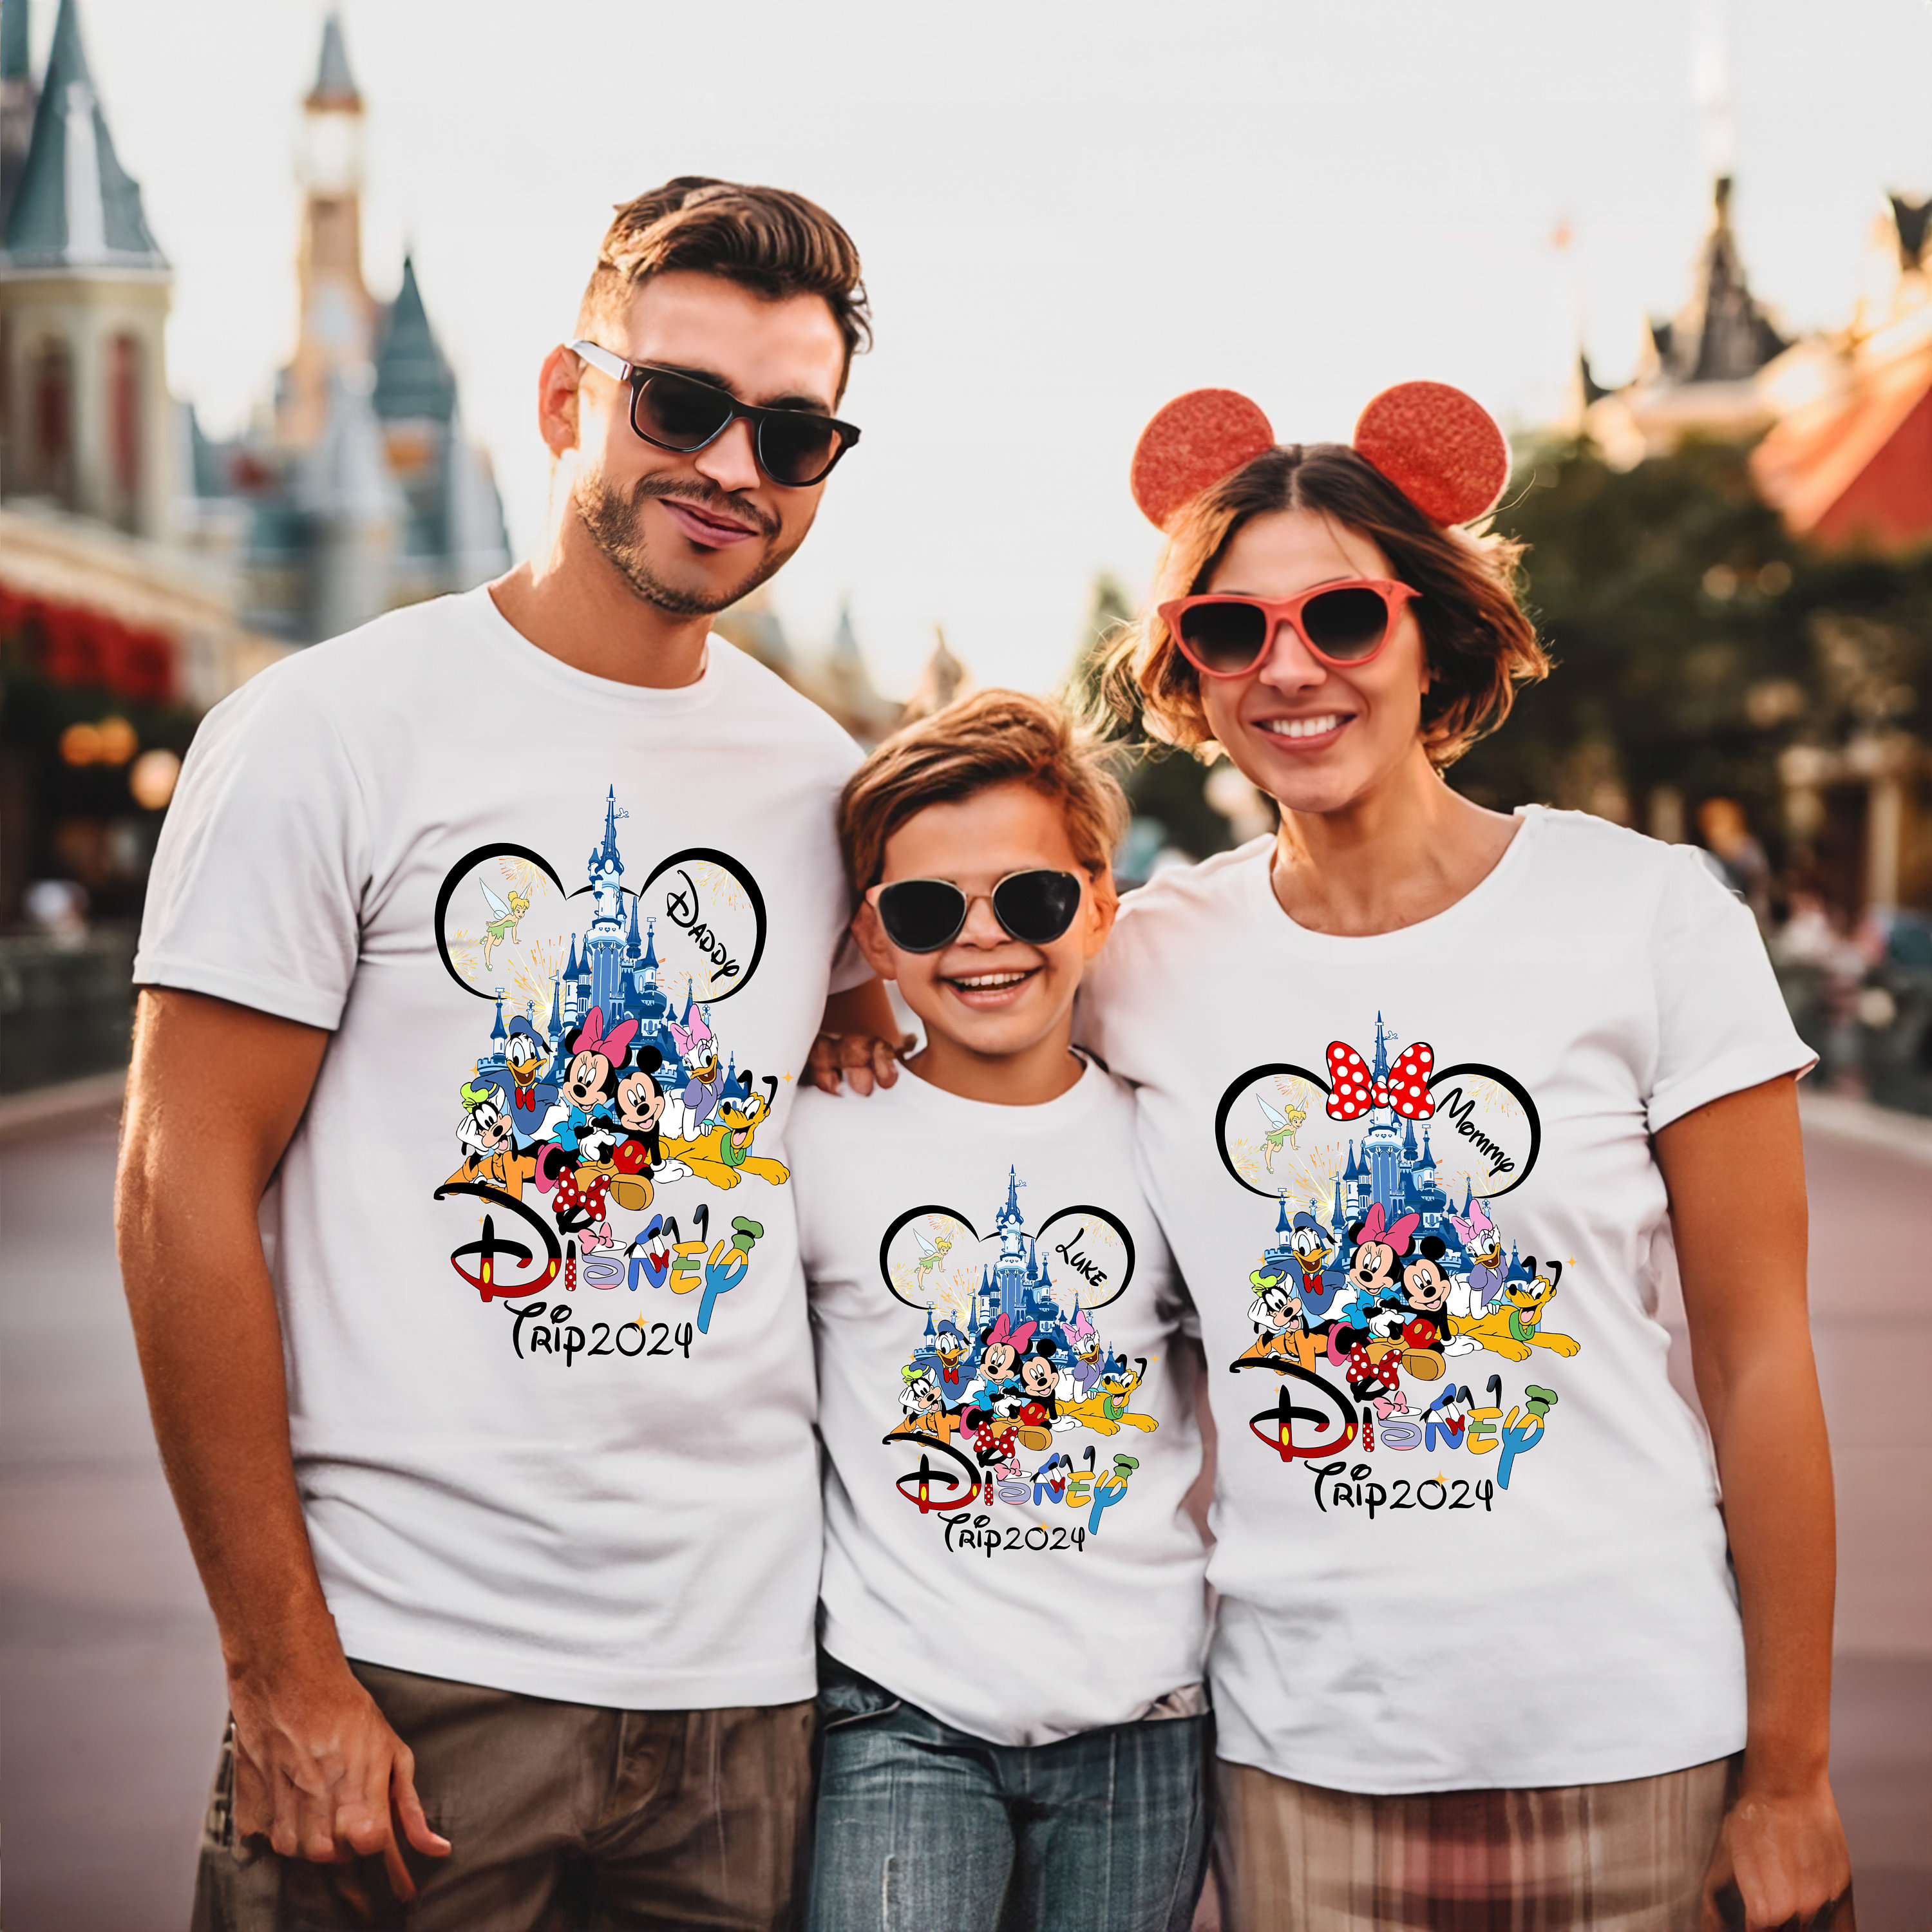 Discover ディズニー ファミリートリップ メンズ レディース ファミリーTシャツ ミッキー ミニー ディズニー社100周年 Disney Family Trip 2024